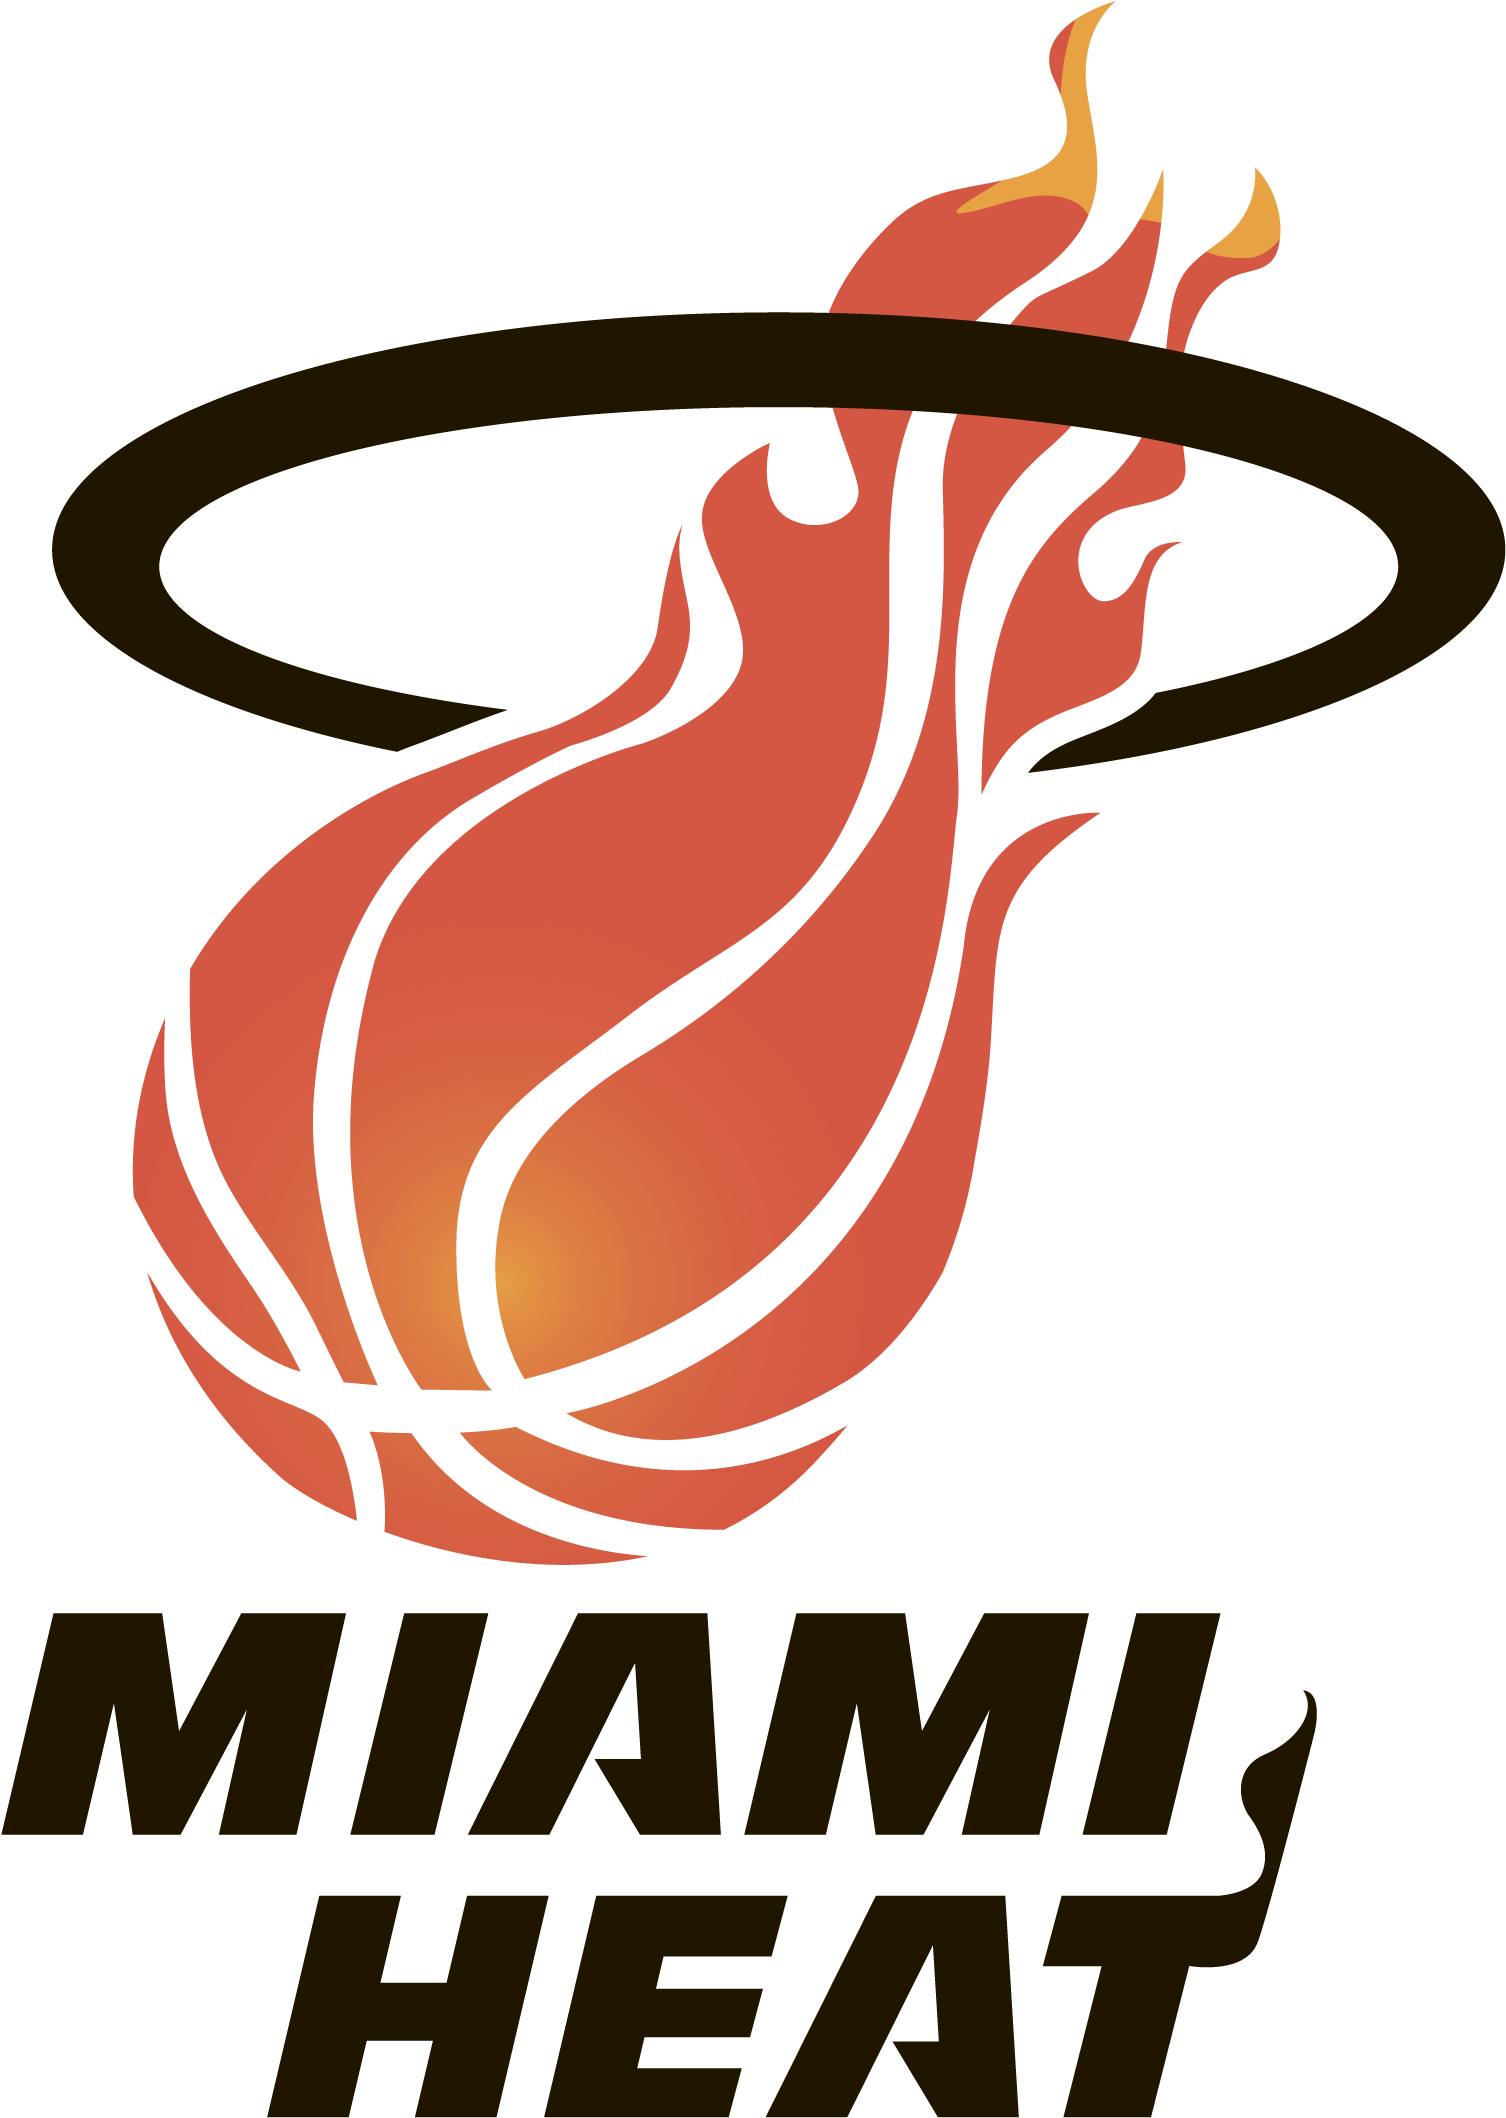 Miami Heat Logo Old - Miami Heat Alternate Logo (3840x2160)